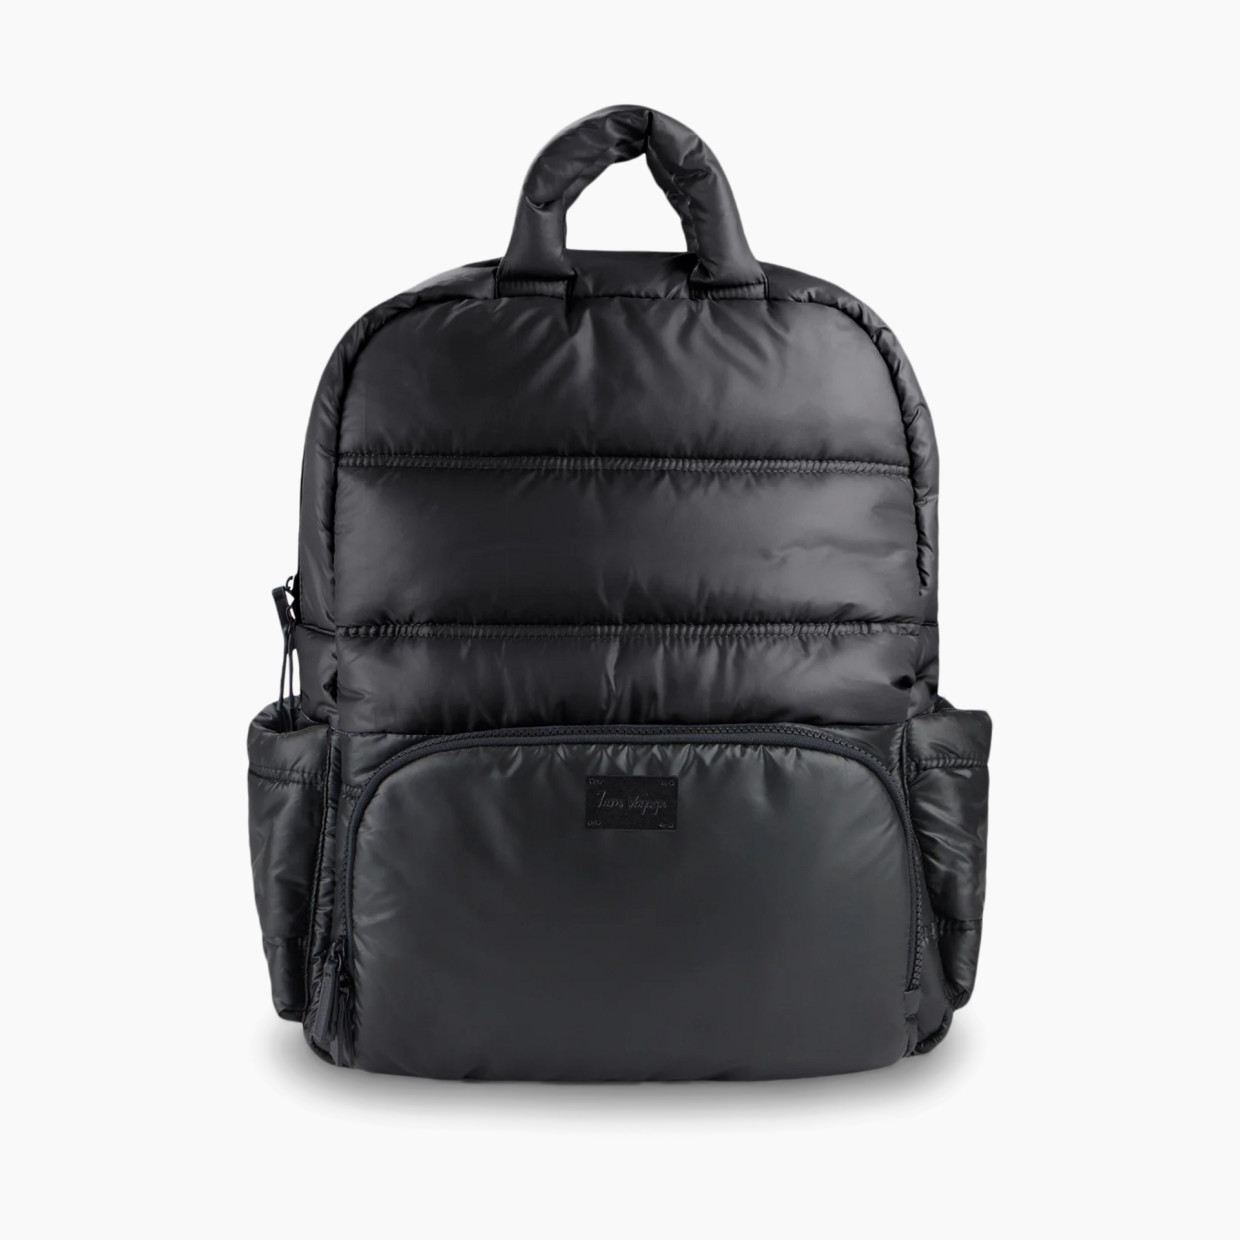 7AM Enfant BK718 Diaper Backpack - Black.